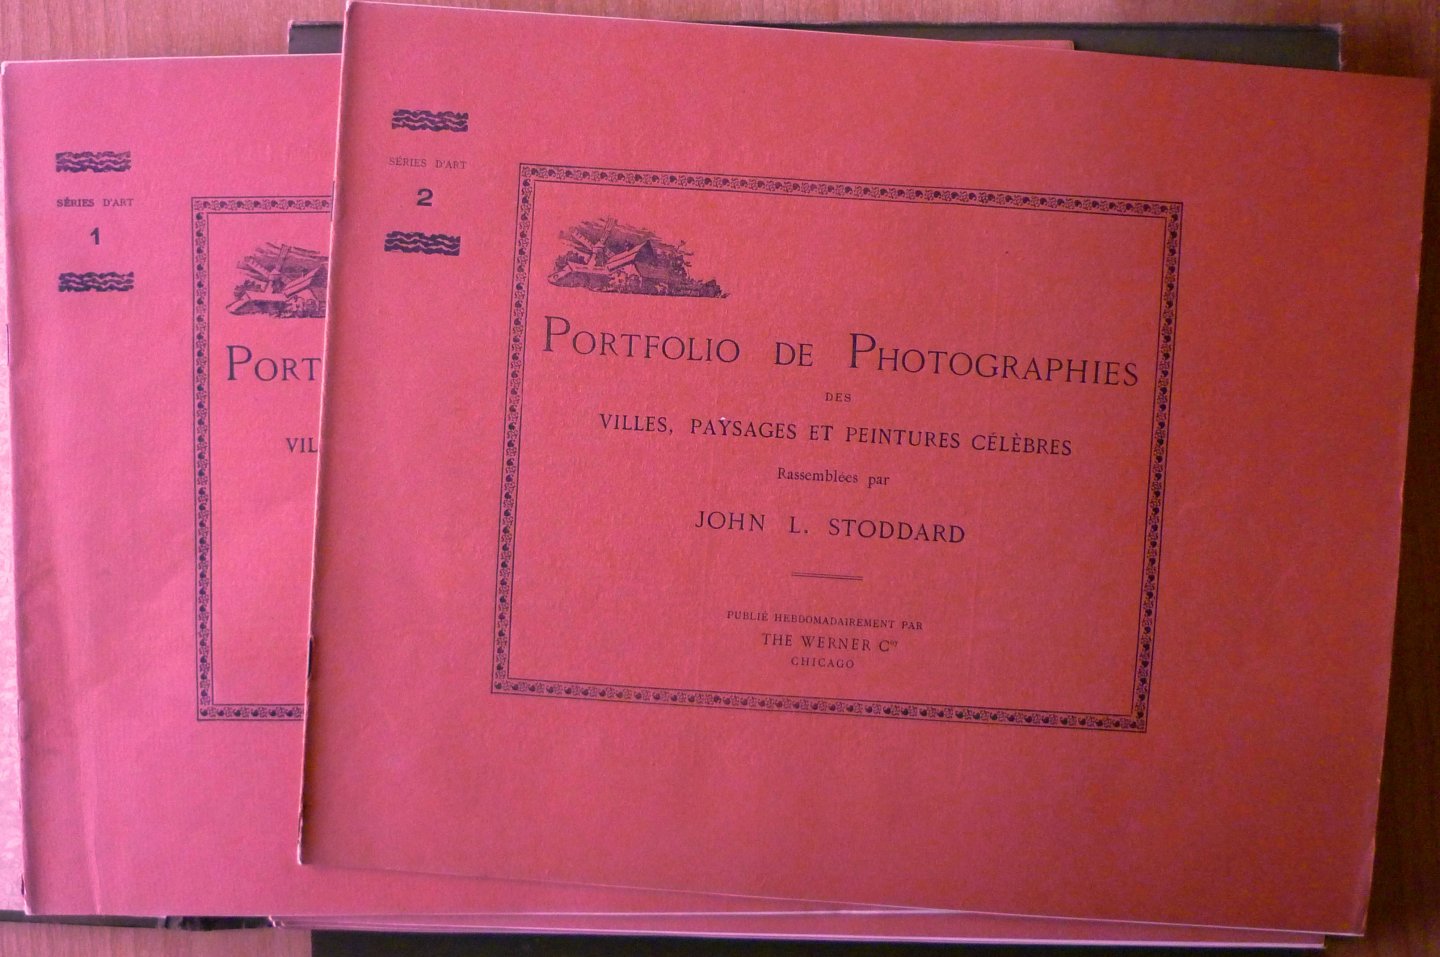 Stoddard, John L. - Portfolio de Photographies des villes, paysages et peintures célèbres